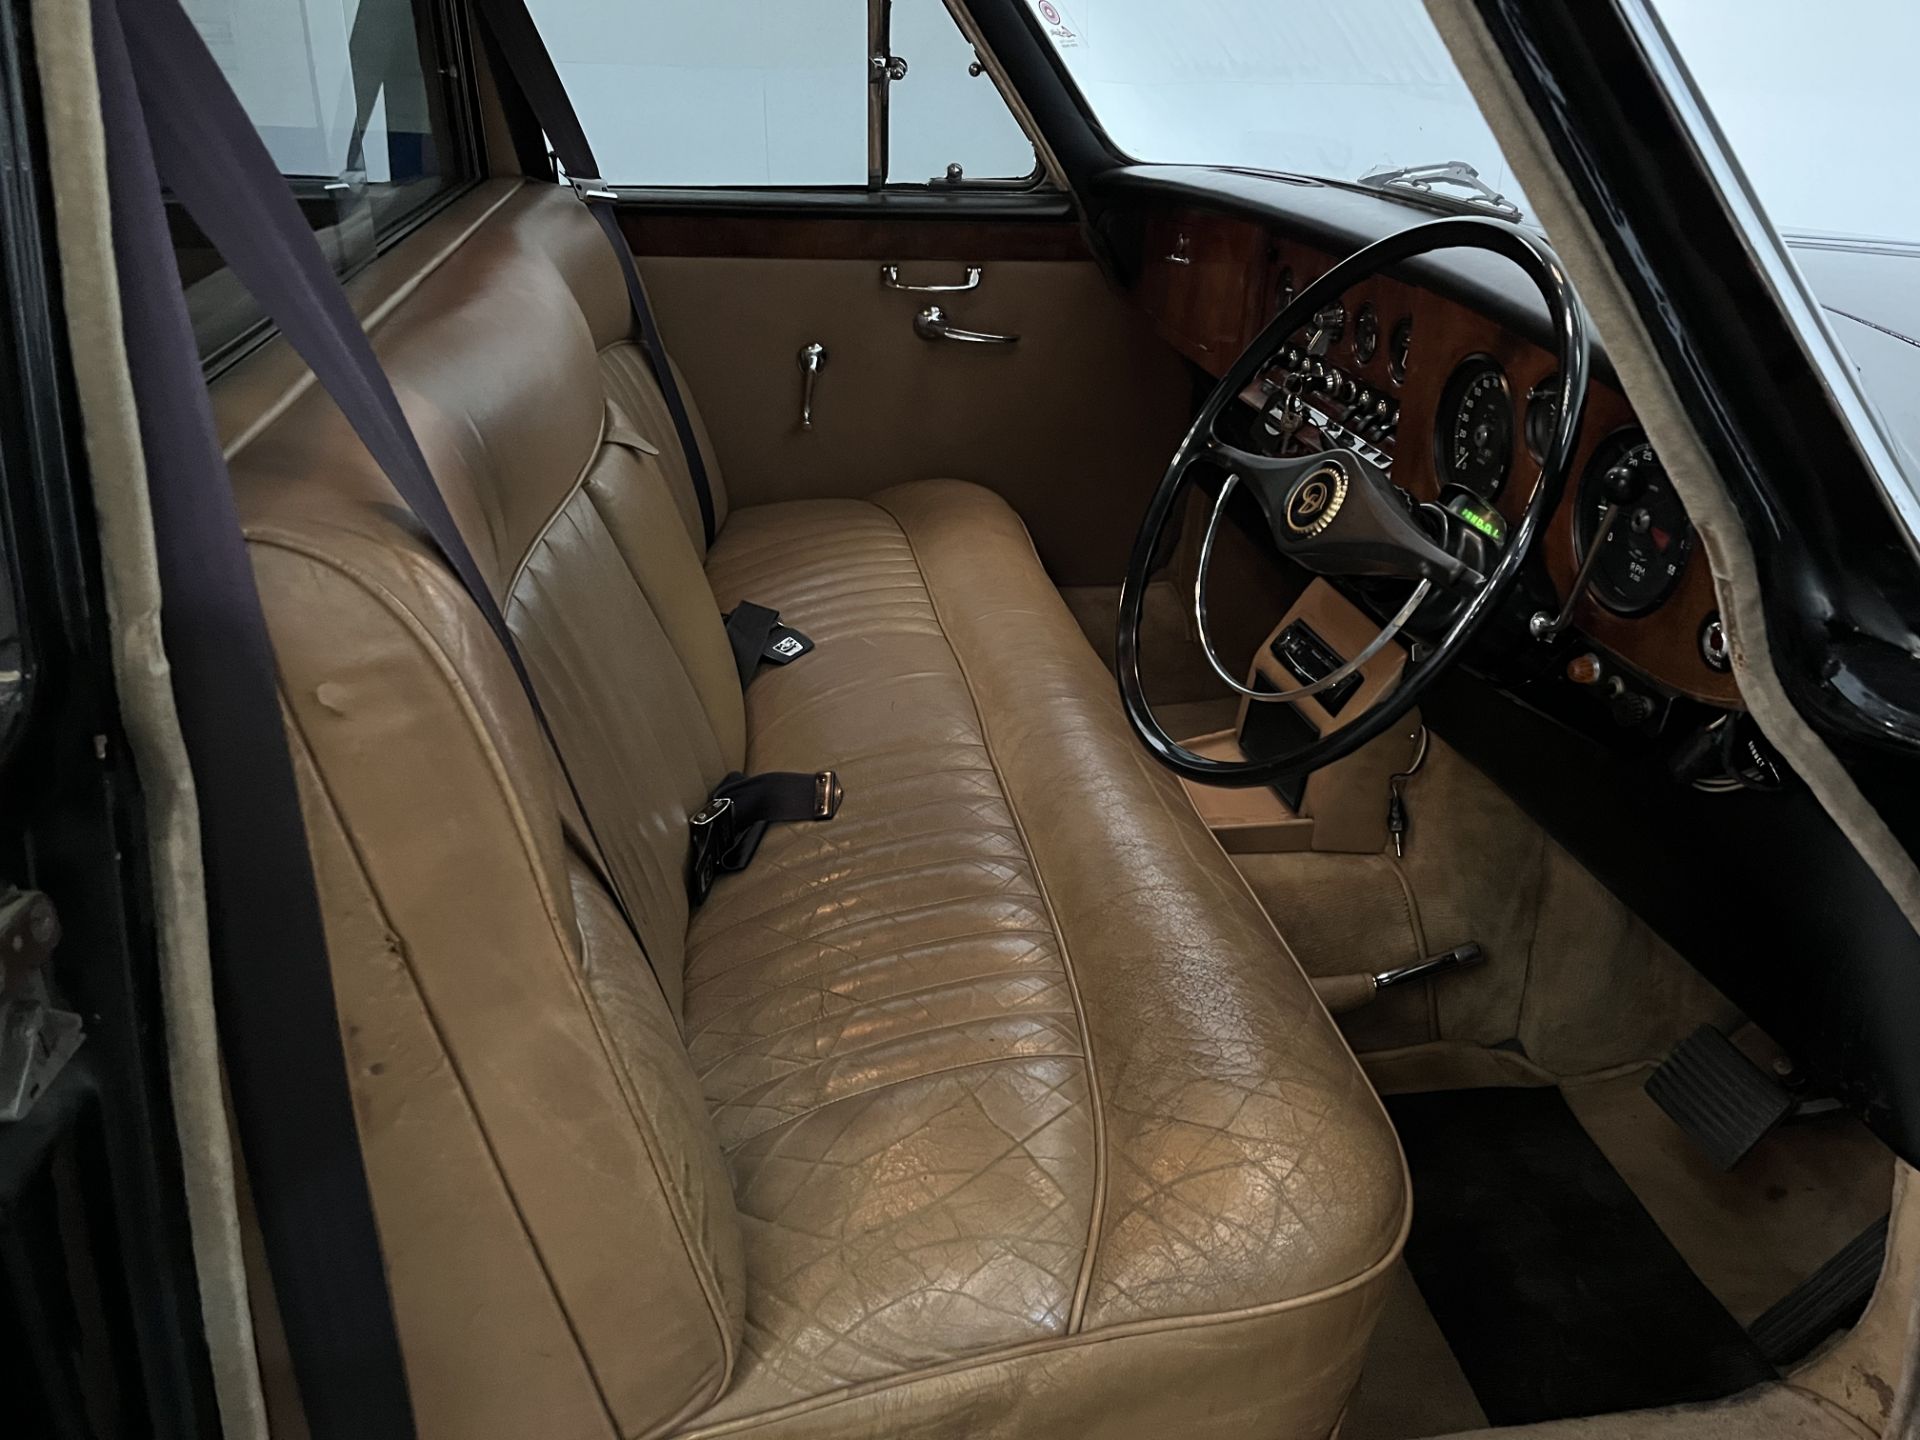 1969 Daimler DS420 Vanden Plas Limousine - 4235cc - Image 7 of 23